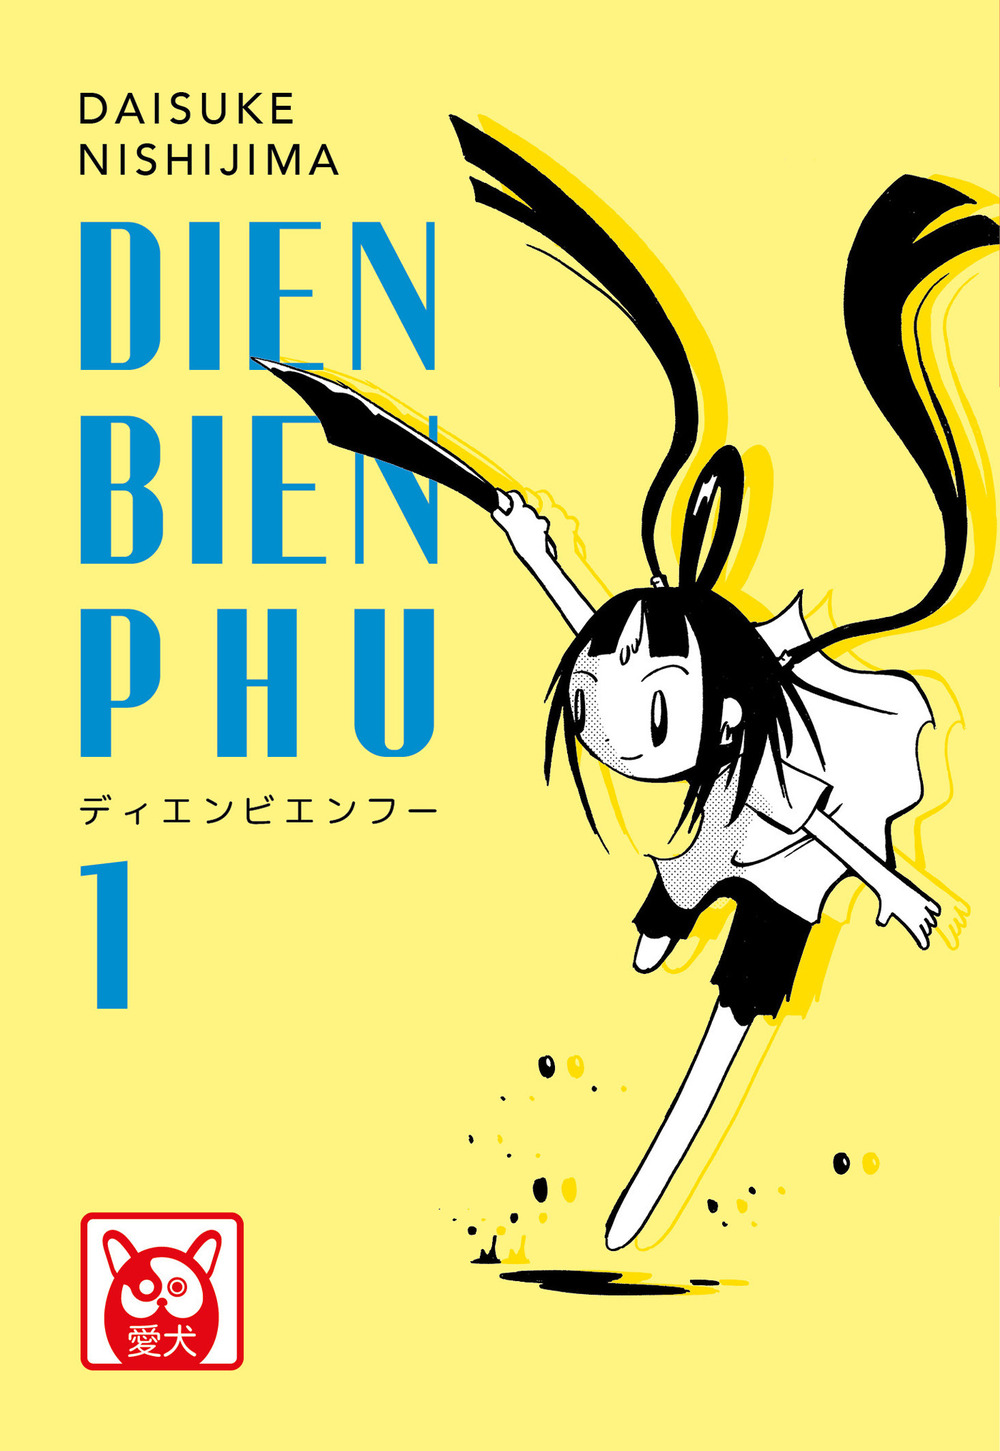 Dien Bien Phu. Vol. 1